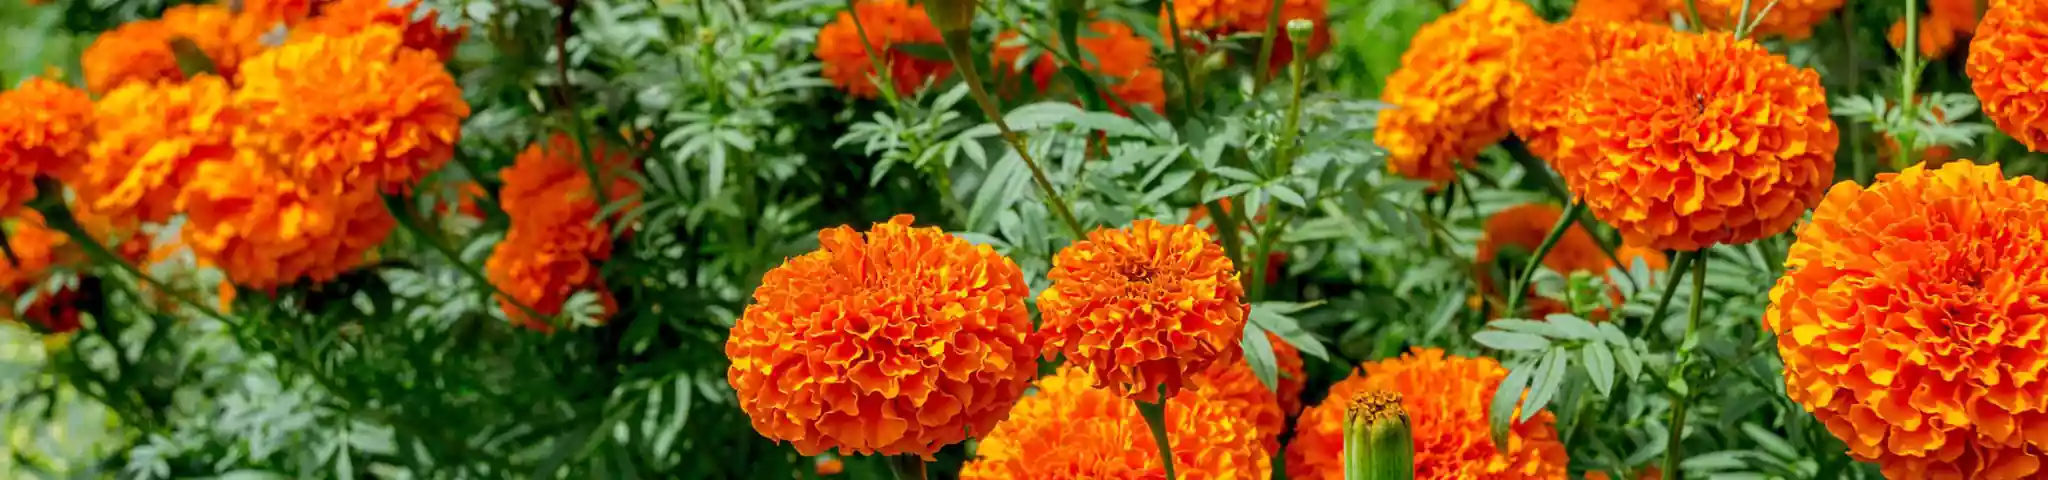 Marigold flower in garden